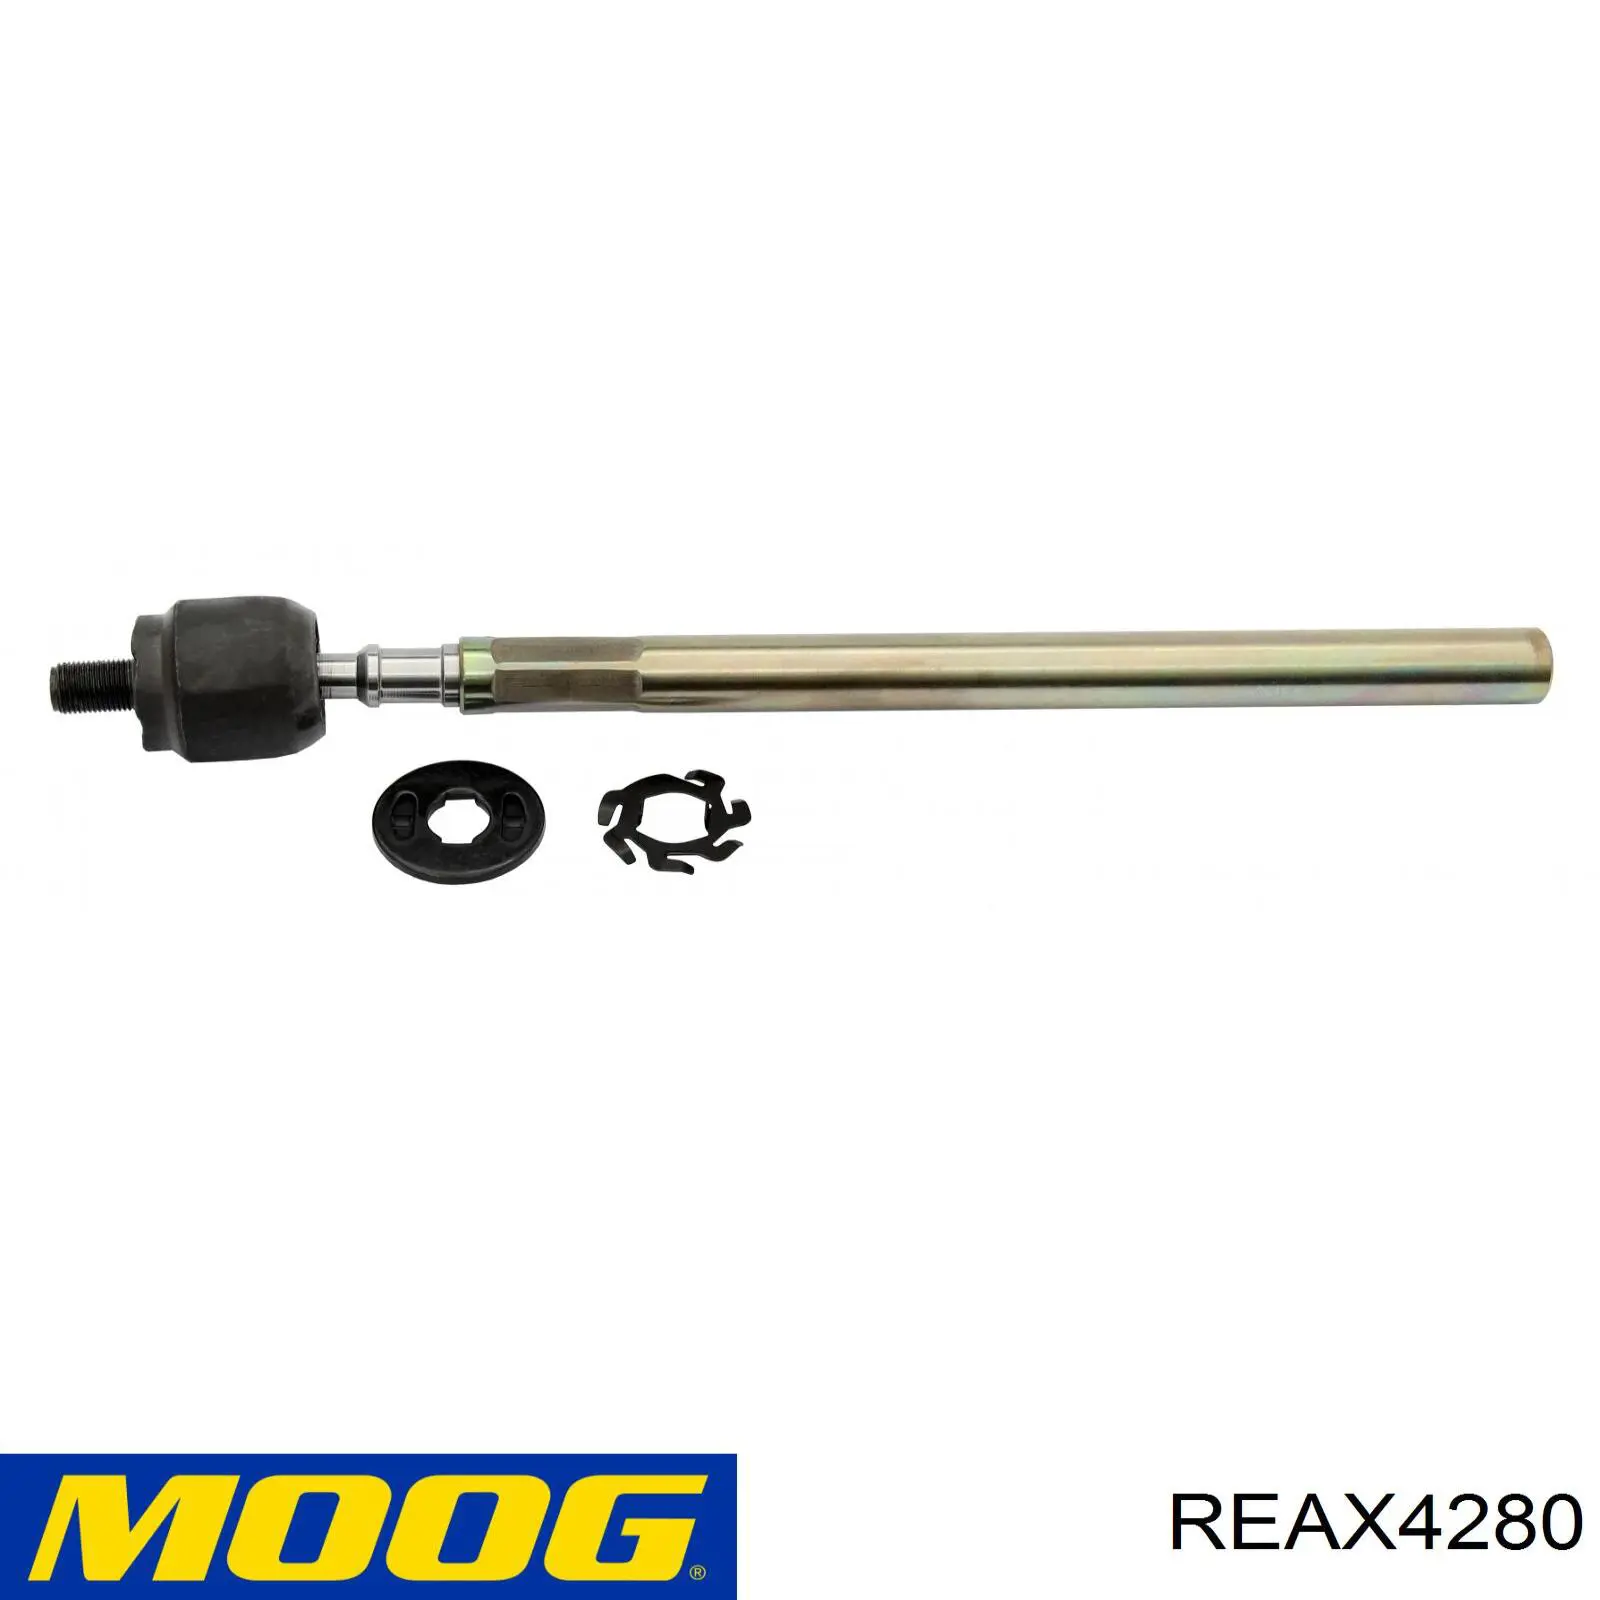 RE-AX-4280 Moog barra de acoplamiento